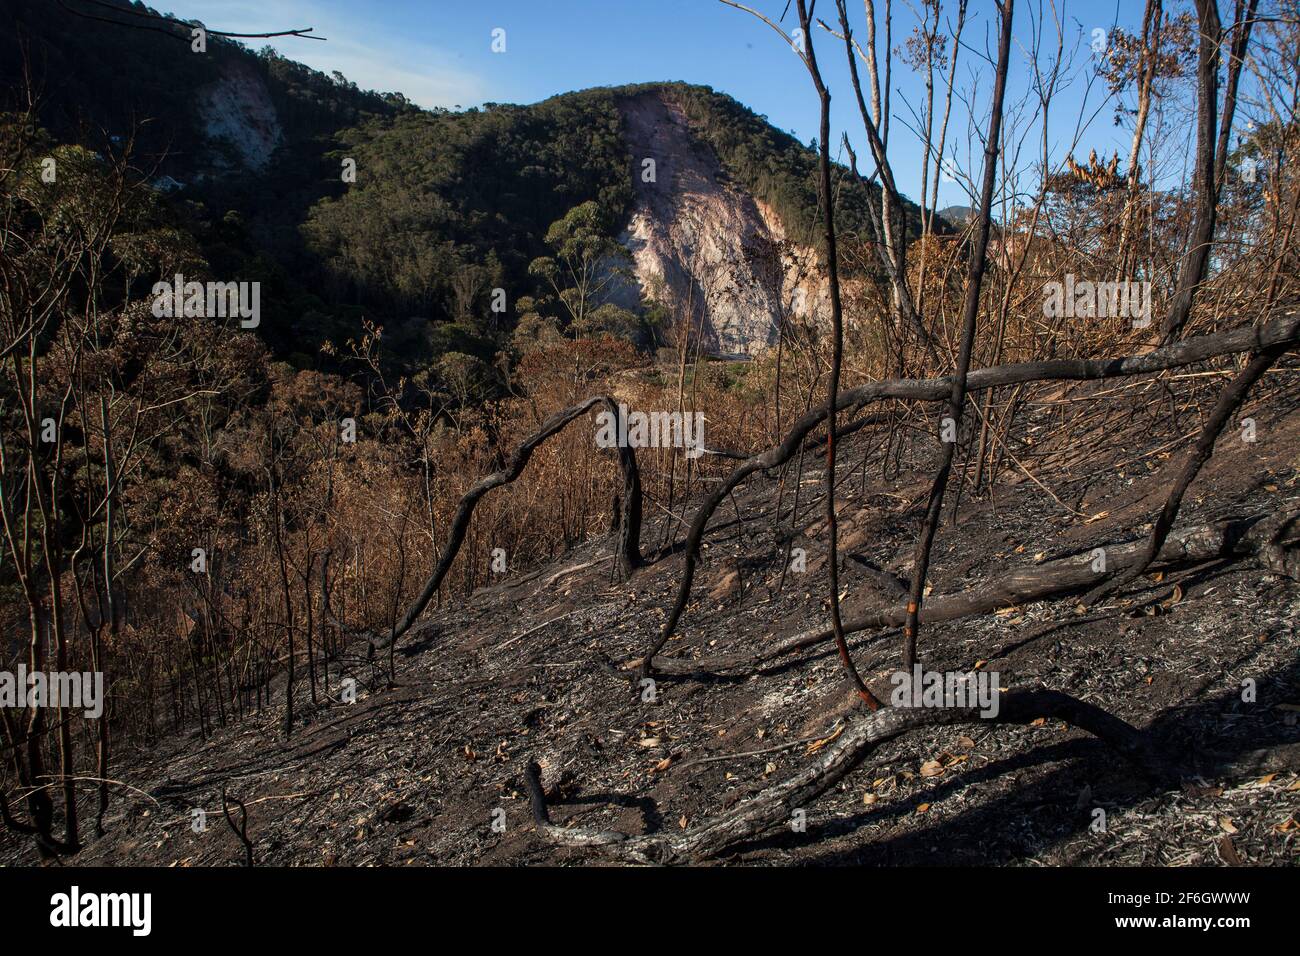 Doppelte Entwaldung - im Vordergrund die Landwirtschaft mit Brandrodung, eine Anbaumethode, bei der Pflanzen in einem Wald geschnitten und verbrannt werden, sowie Erdrutsch durch Regen und Erosion im Hintergrund. Nova Friburgo, Bundesstaat Rio de Janeiro, Brasilien. Stockfoto